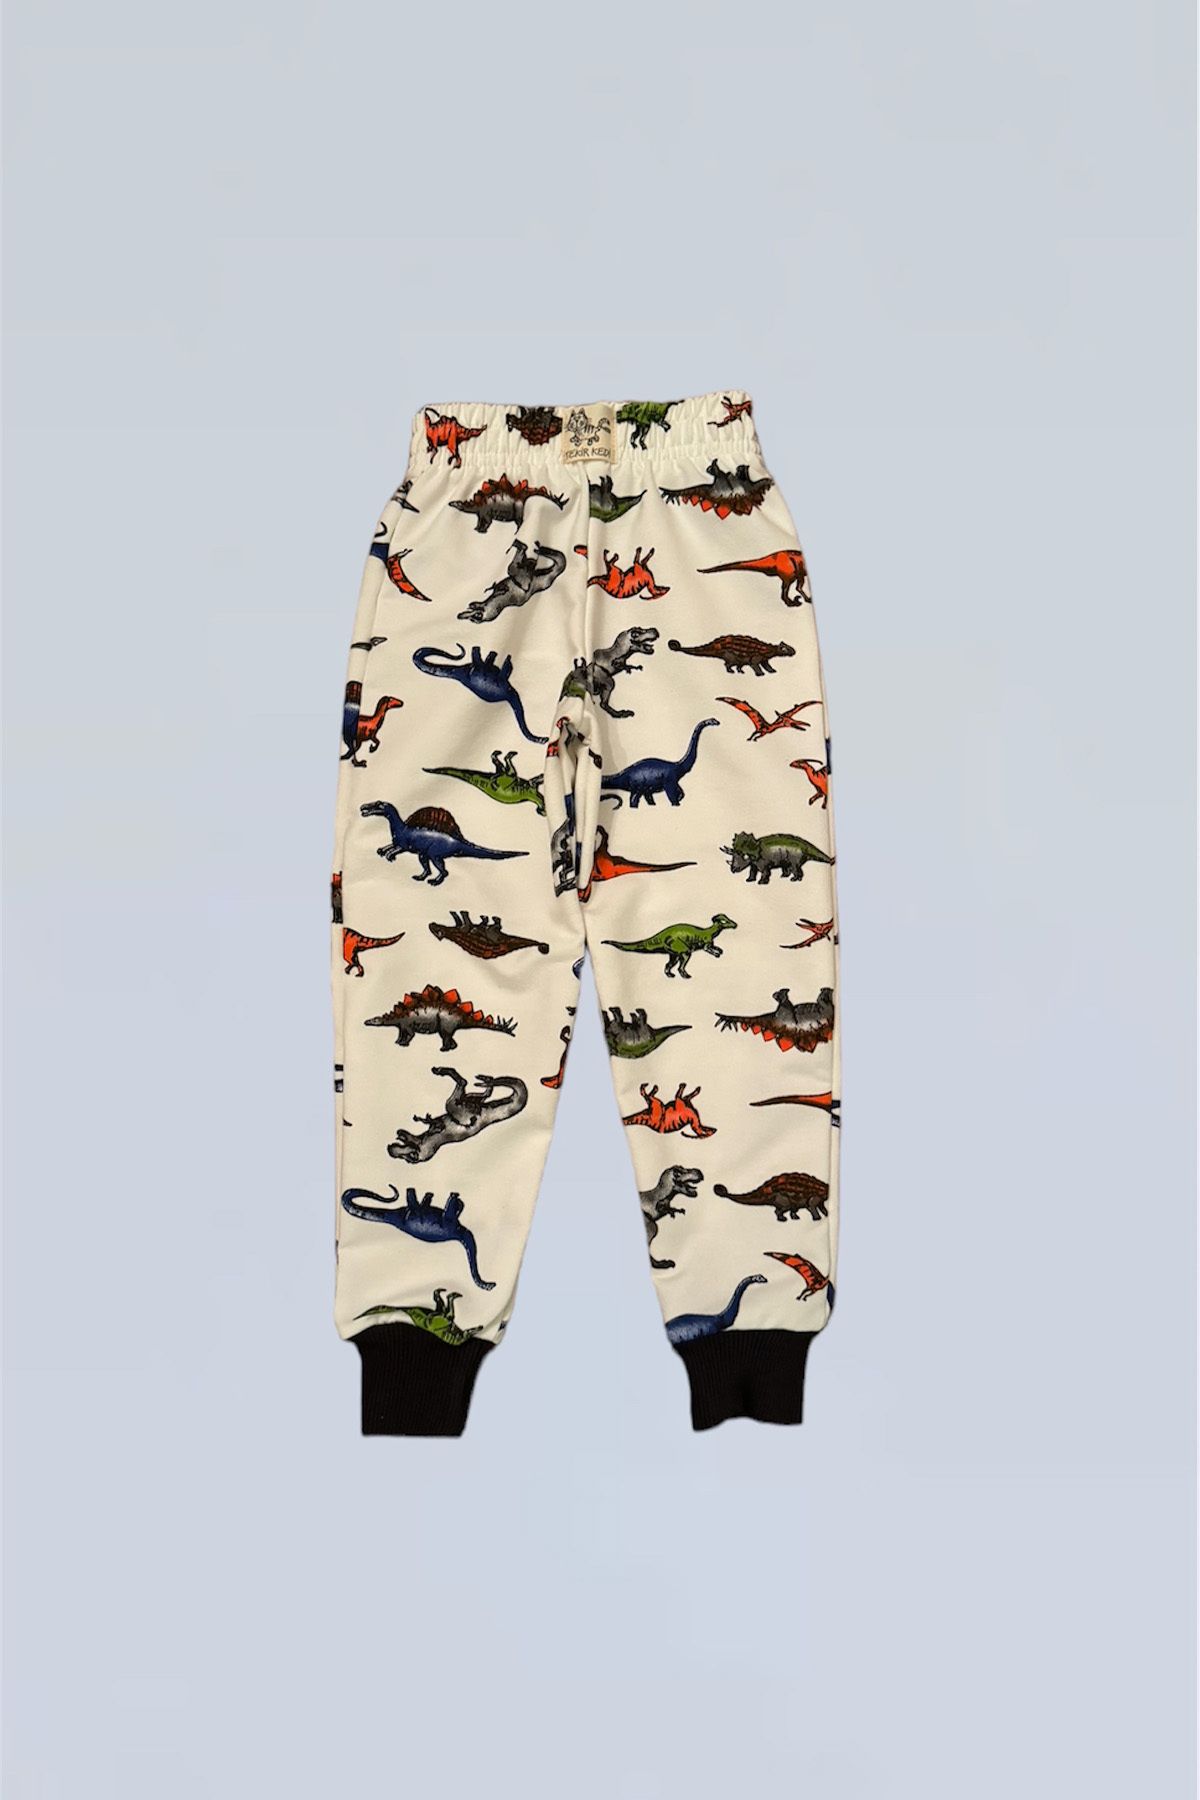 Peki Çocuk 5 Al 4 Öde Erkek Kız Pamuklu Dinozor Dinosour Dino Pijama Pantolon Eşofman Alt Hediyelik 15097